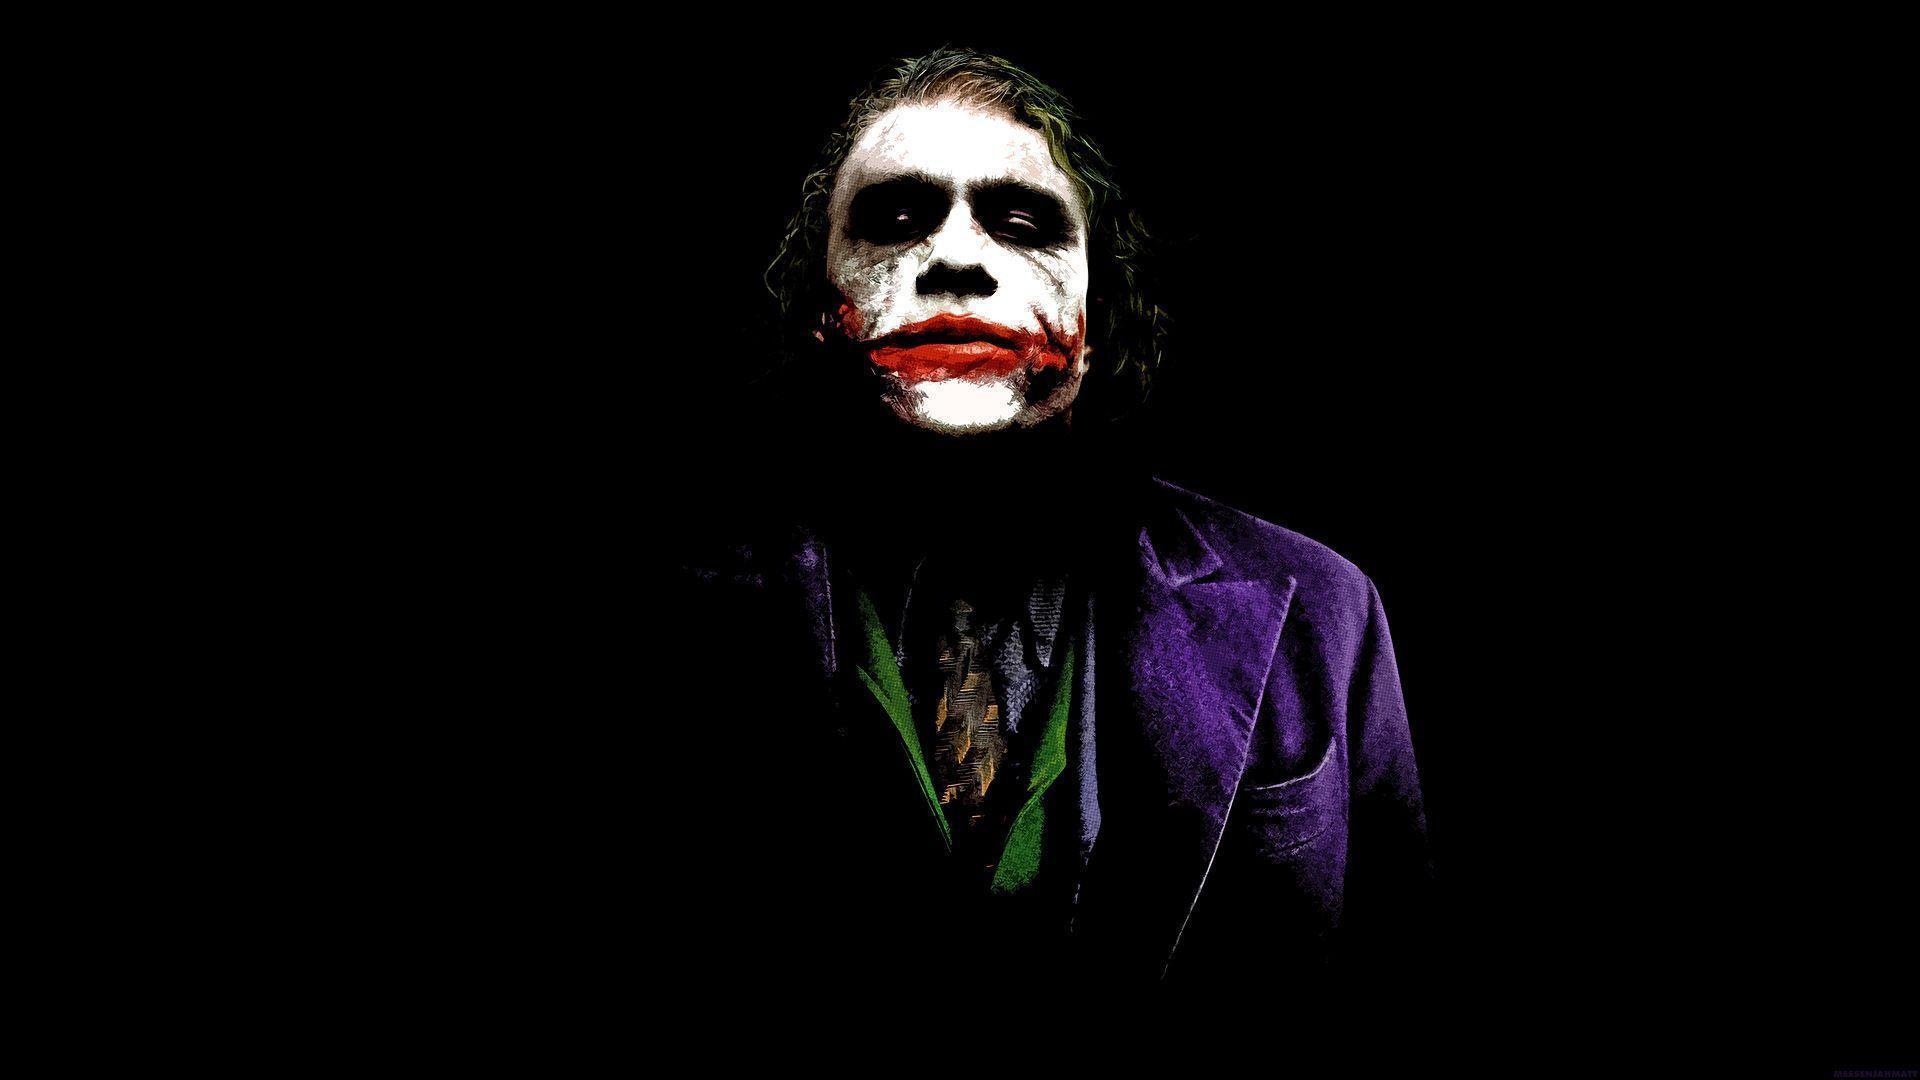 Joker The Joker 28092878 1920 1080 Joker Wallpaper HD Free